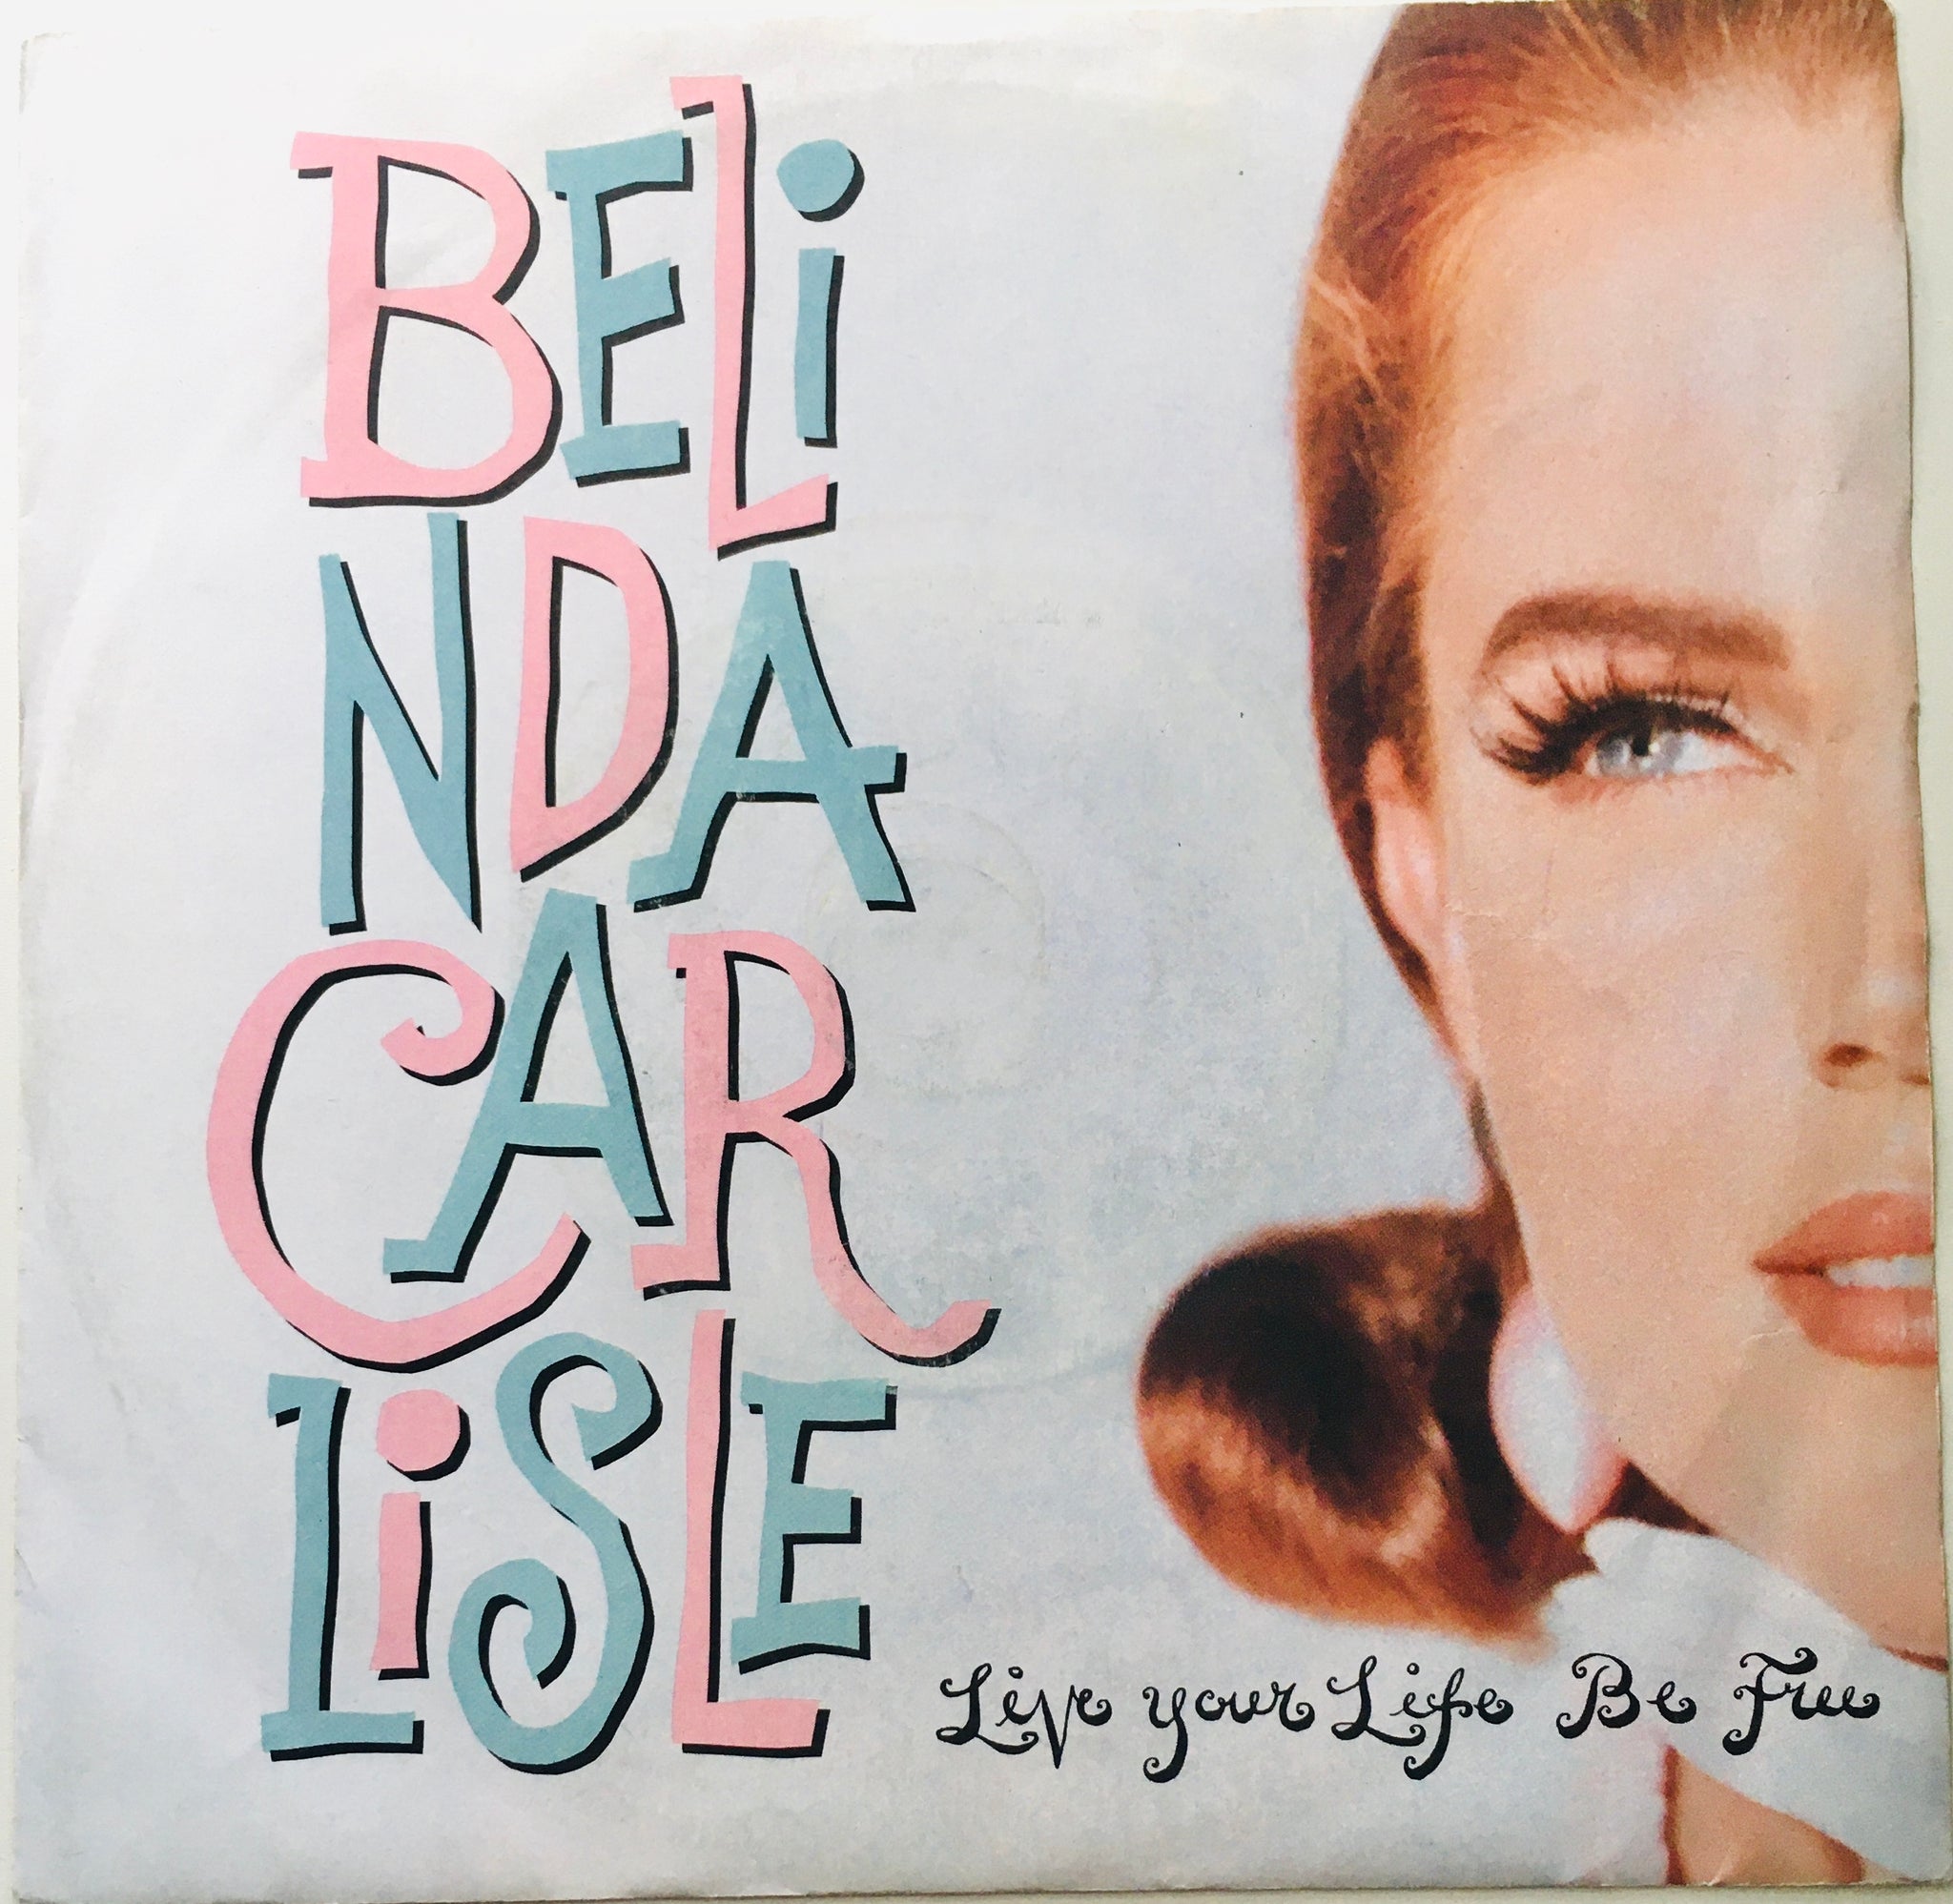 Belinda Carlisle "Live Your Life Be Free" Single (1991)